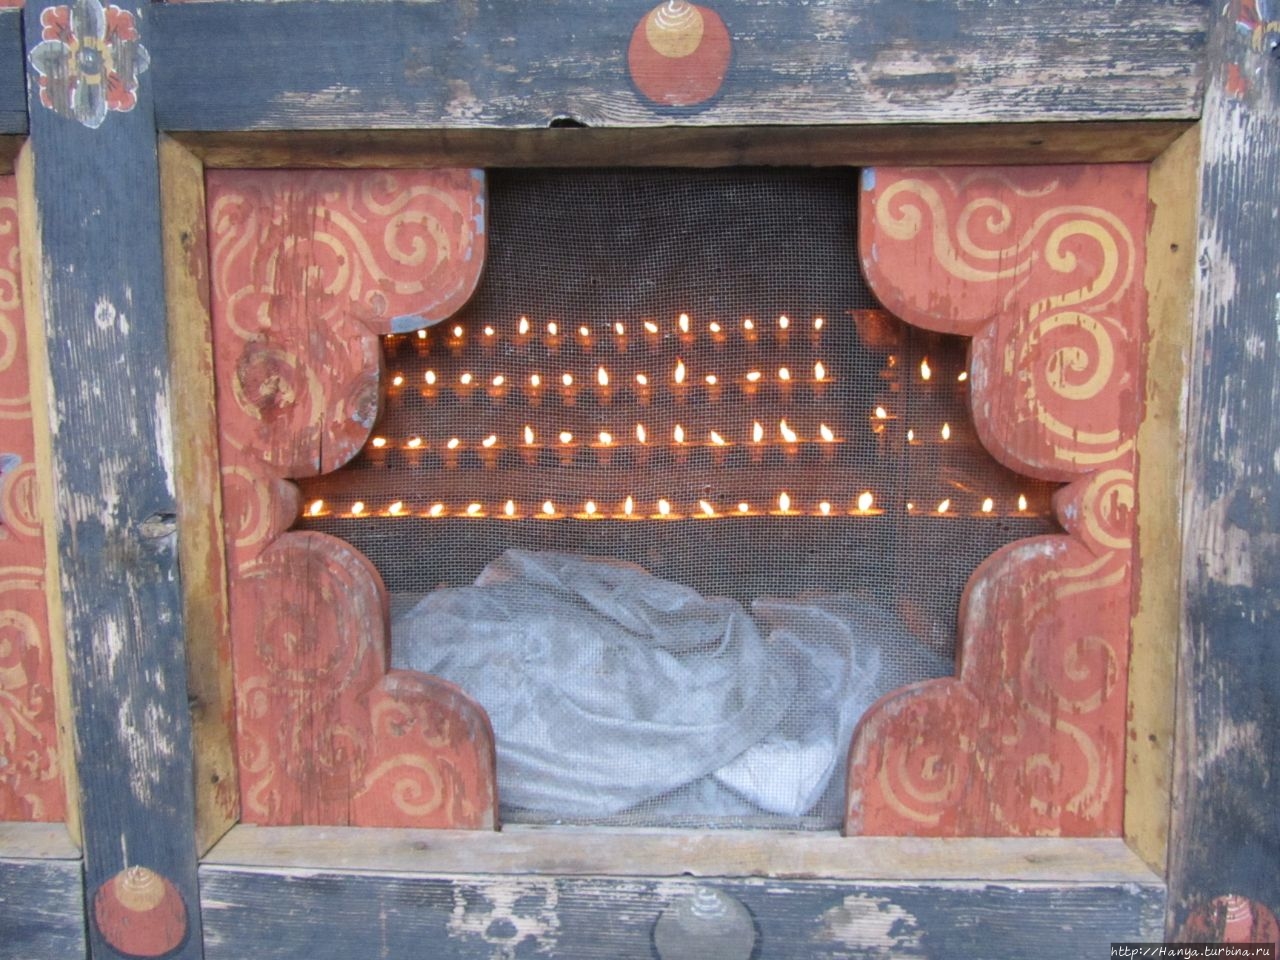 Монастырь Кьичу-лхакханг Паро, Бутан